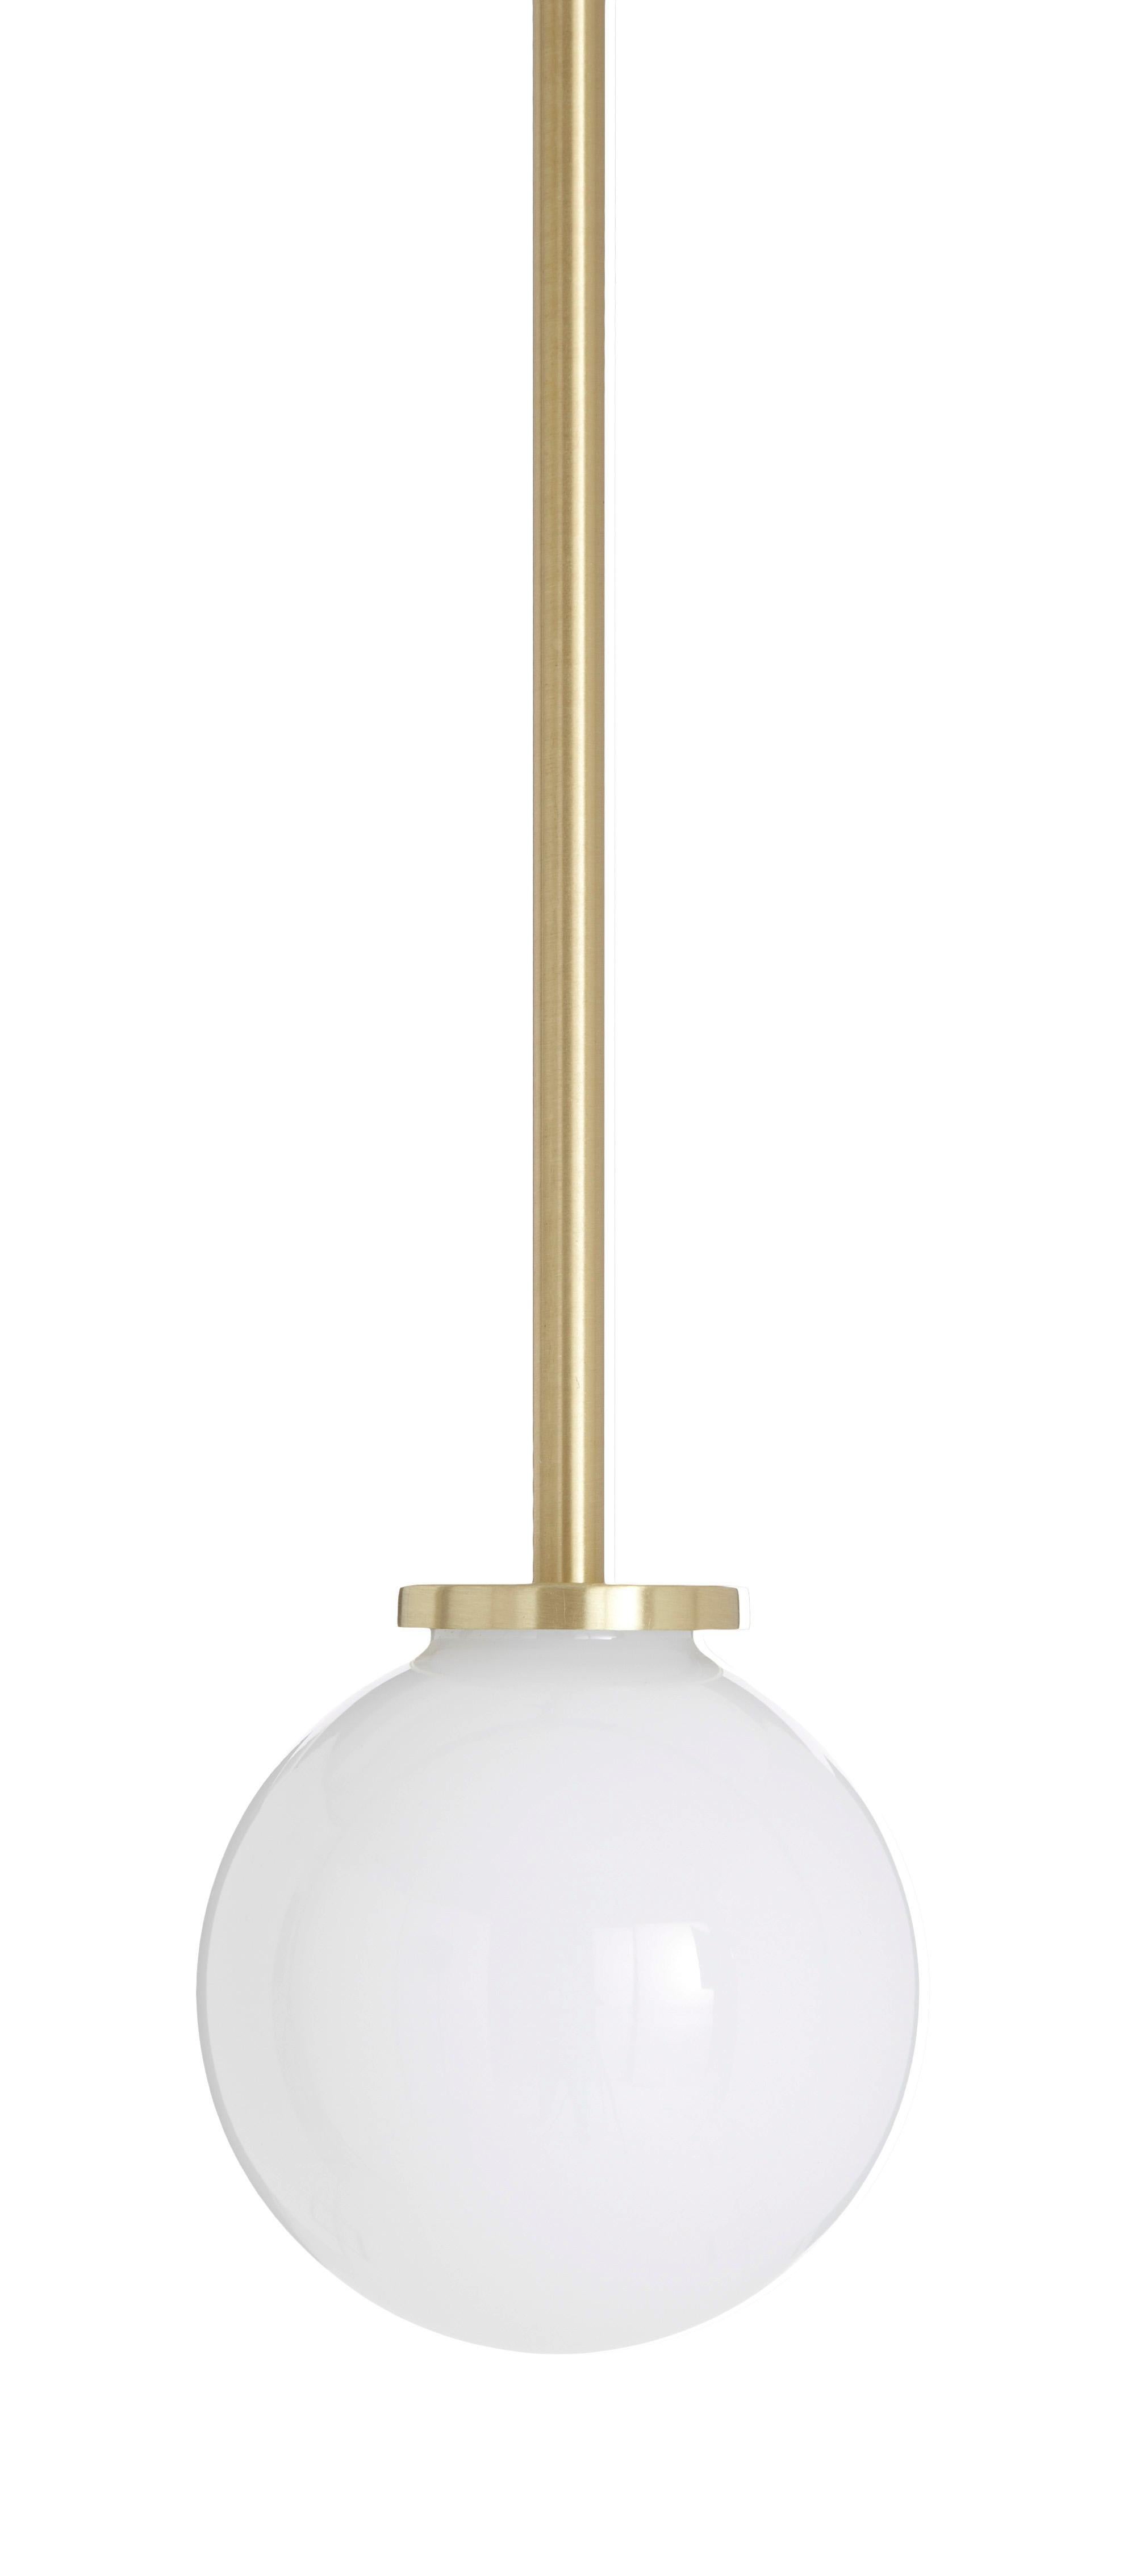 Mezzo Pendelleuchte von CTO Lighting
MATERIALIEN: satiniertes Messing mit Opalglasschirm und satinierter Messingstange
Abmessungen: H 15 x B 12 cm

Alle unsere Lampen können je nach Land verkabelt werden. Wenn es in die USA verkauft wird, wird es